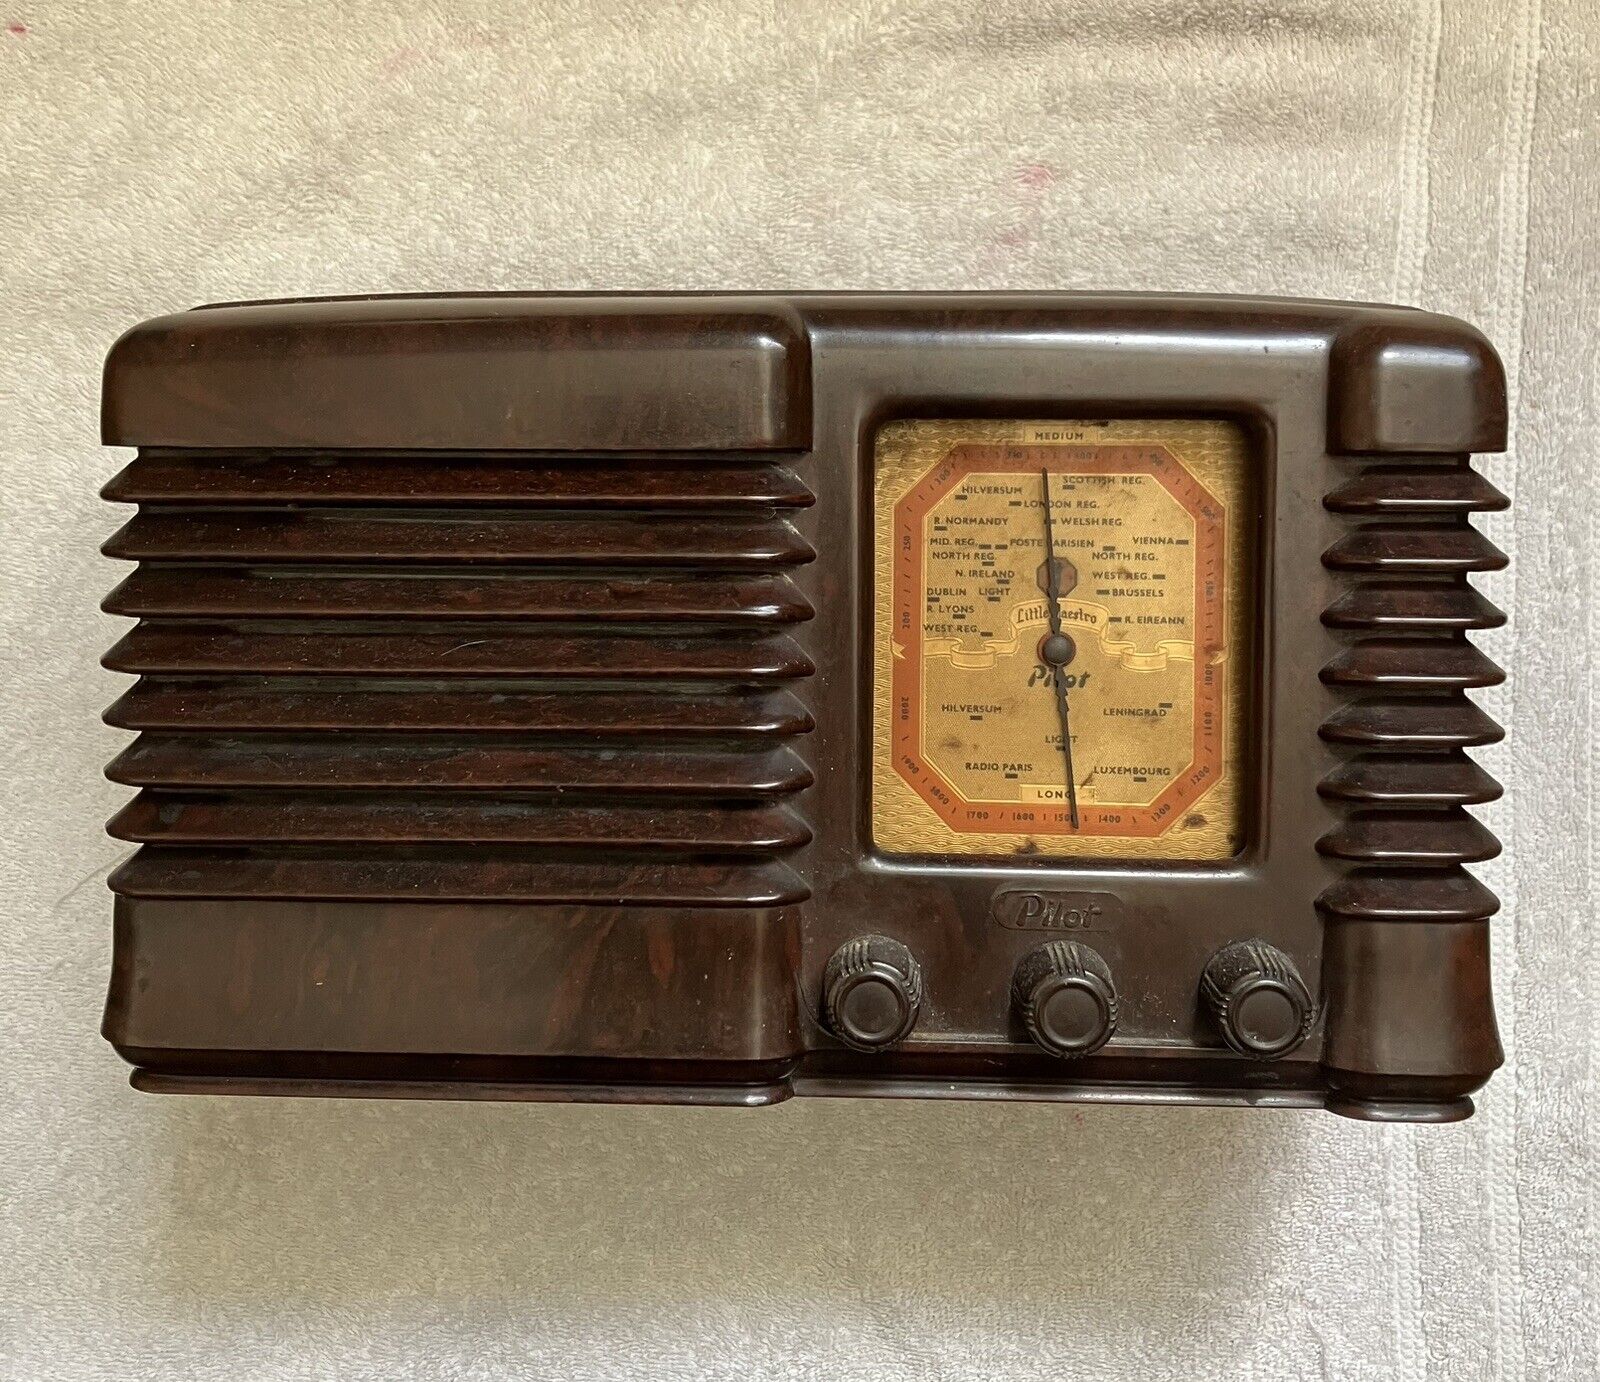 Vintage Pilot Maestro Bakelite Radio. Untested.